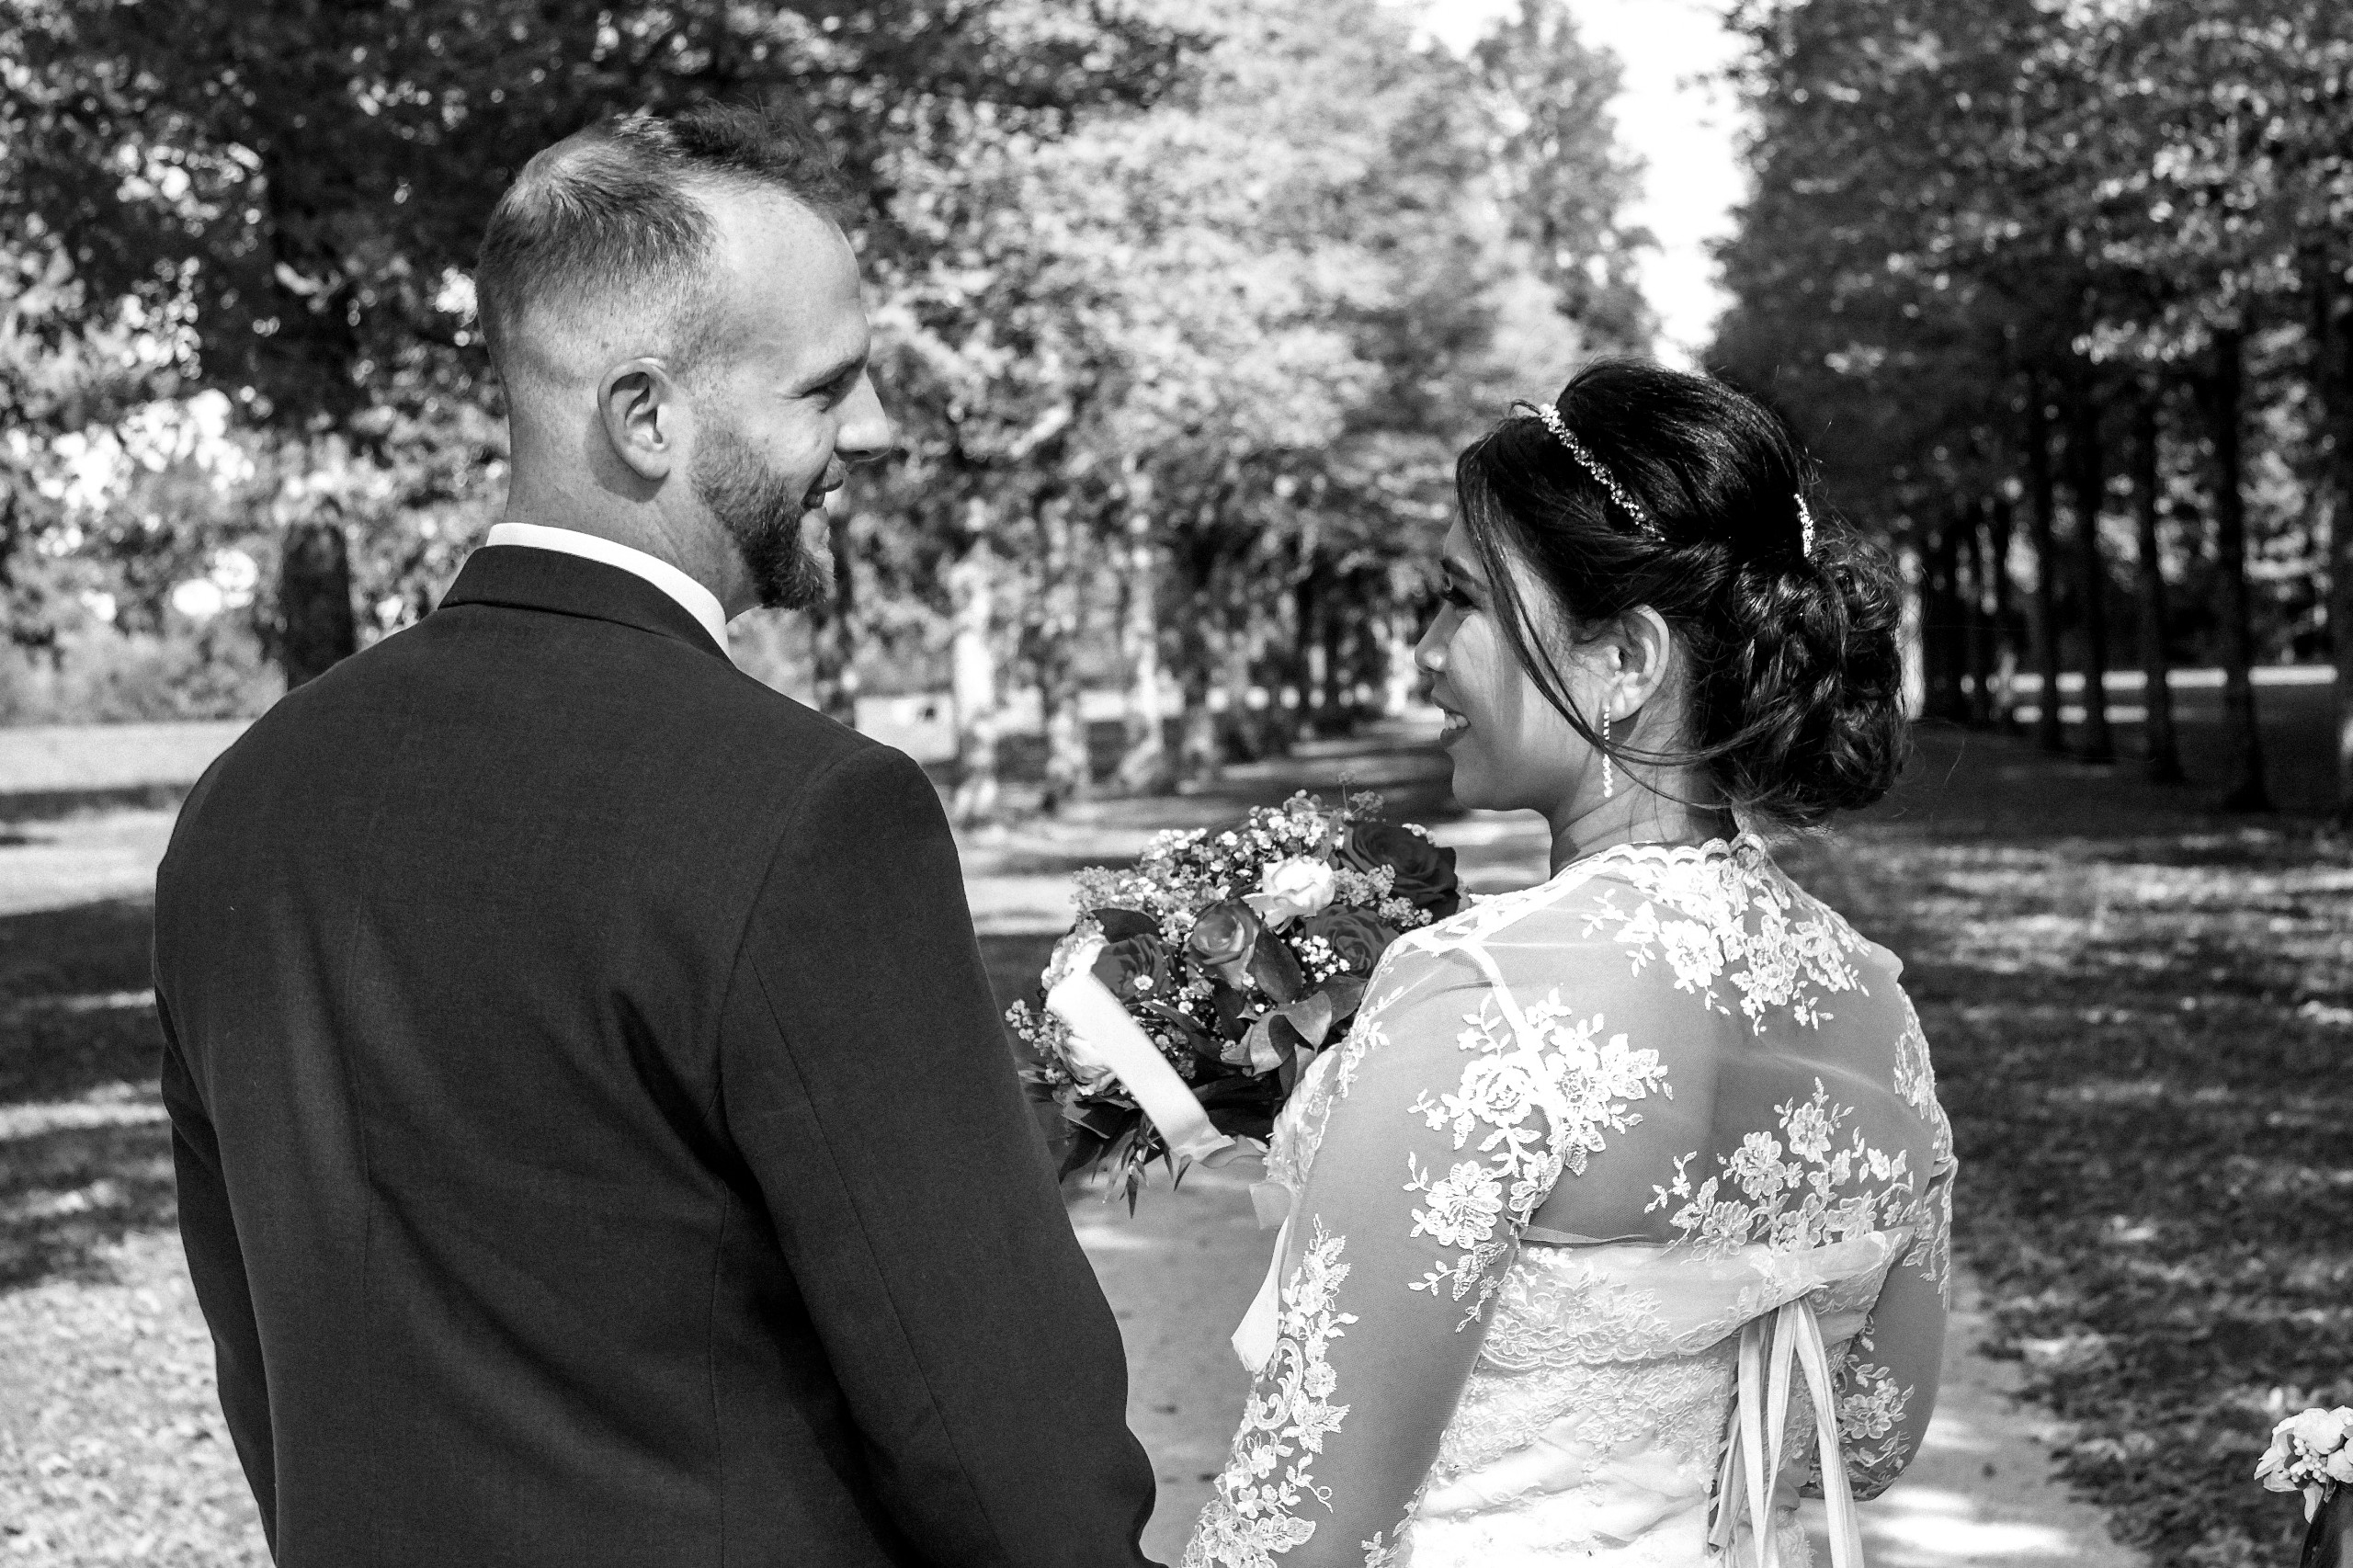 Hochzeitsfotograf im Gro&szlig;raum Stuttgart. Ich schaffe als Fotograf Ihrer Hochzeit emotionale, preiswerte Fotografie, bereits ab 280 &euro;